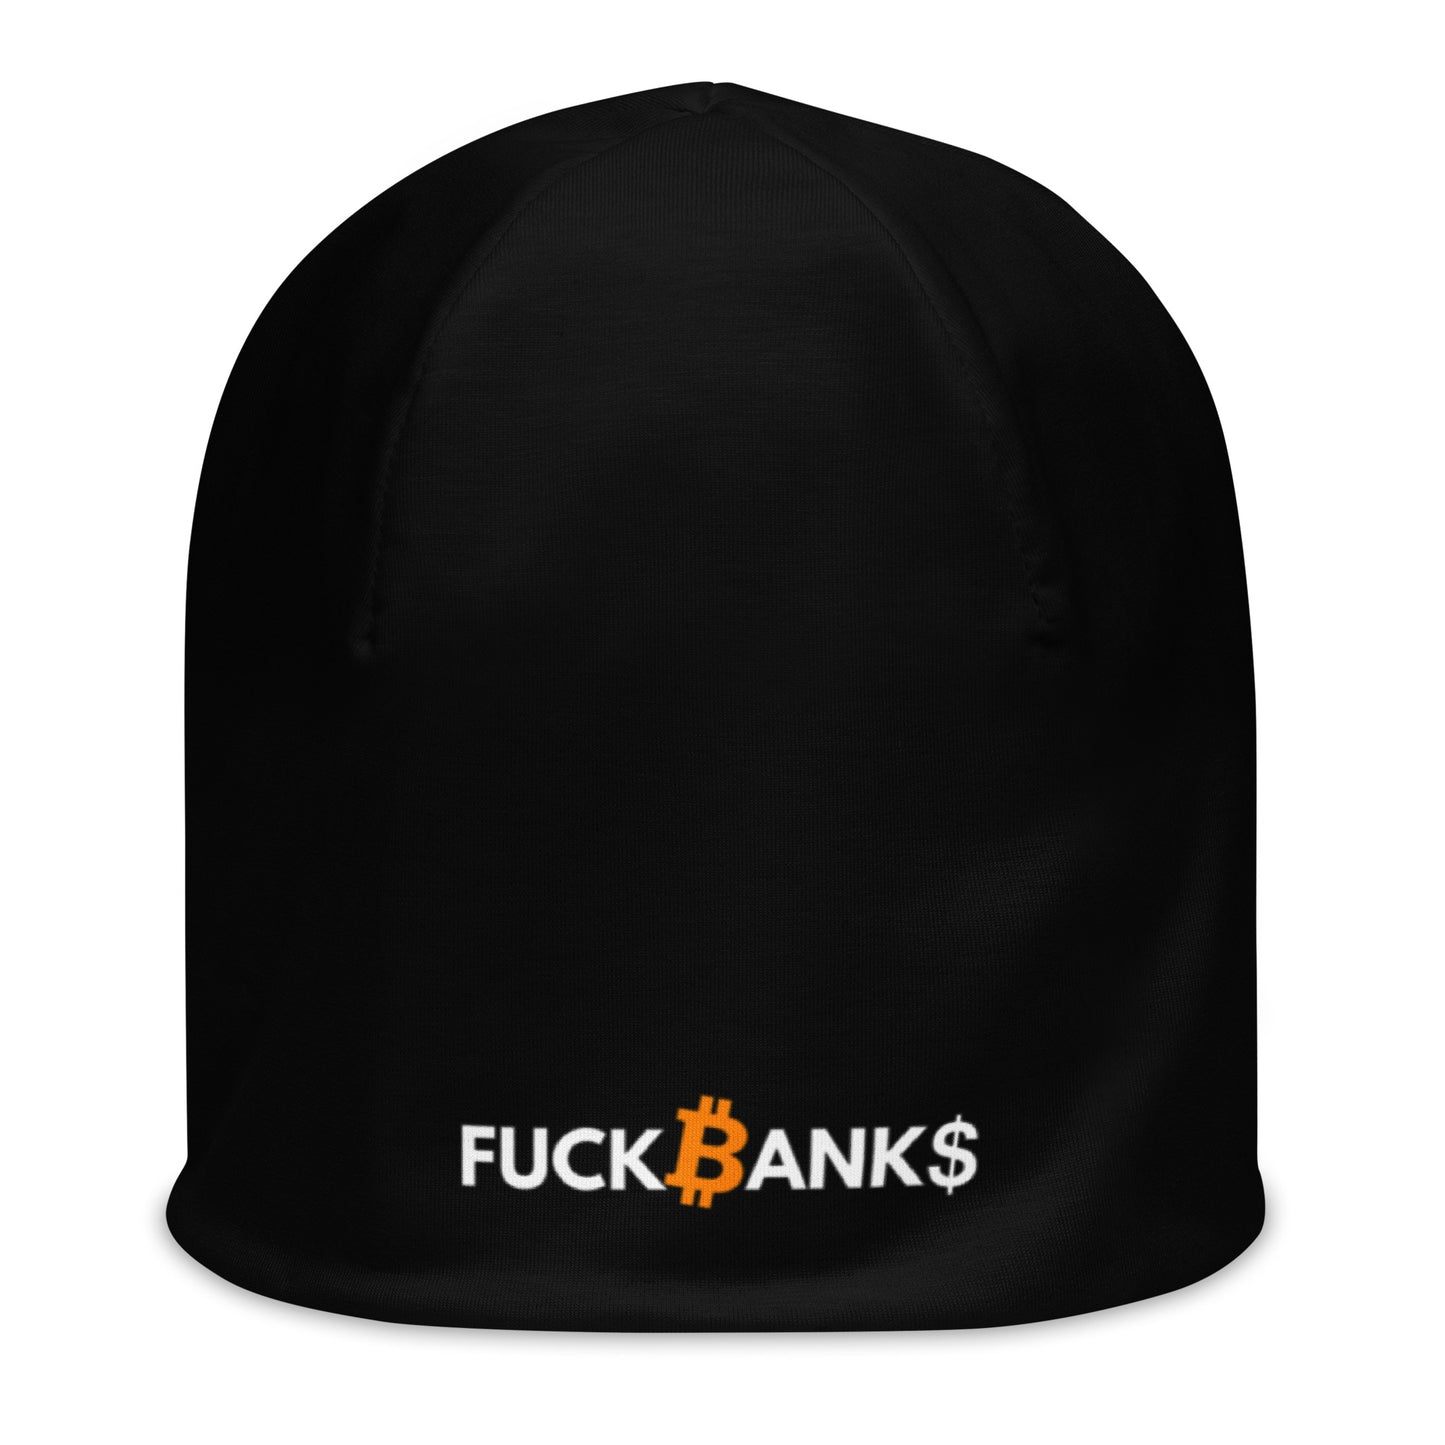 FUCK BANKS -Mütze bestickt